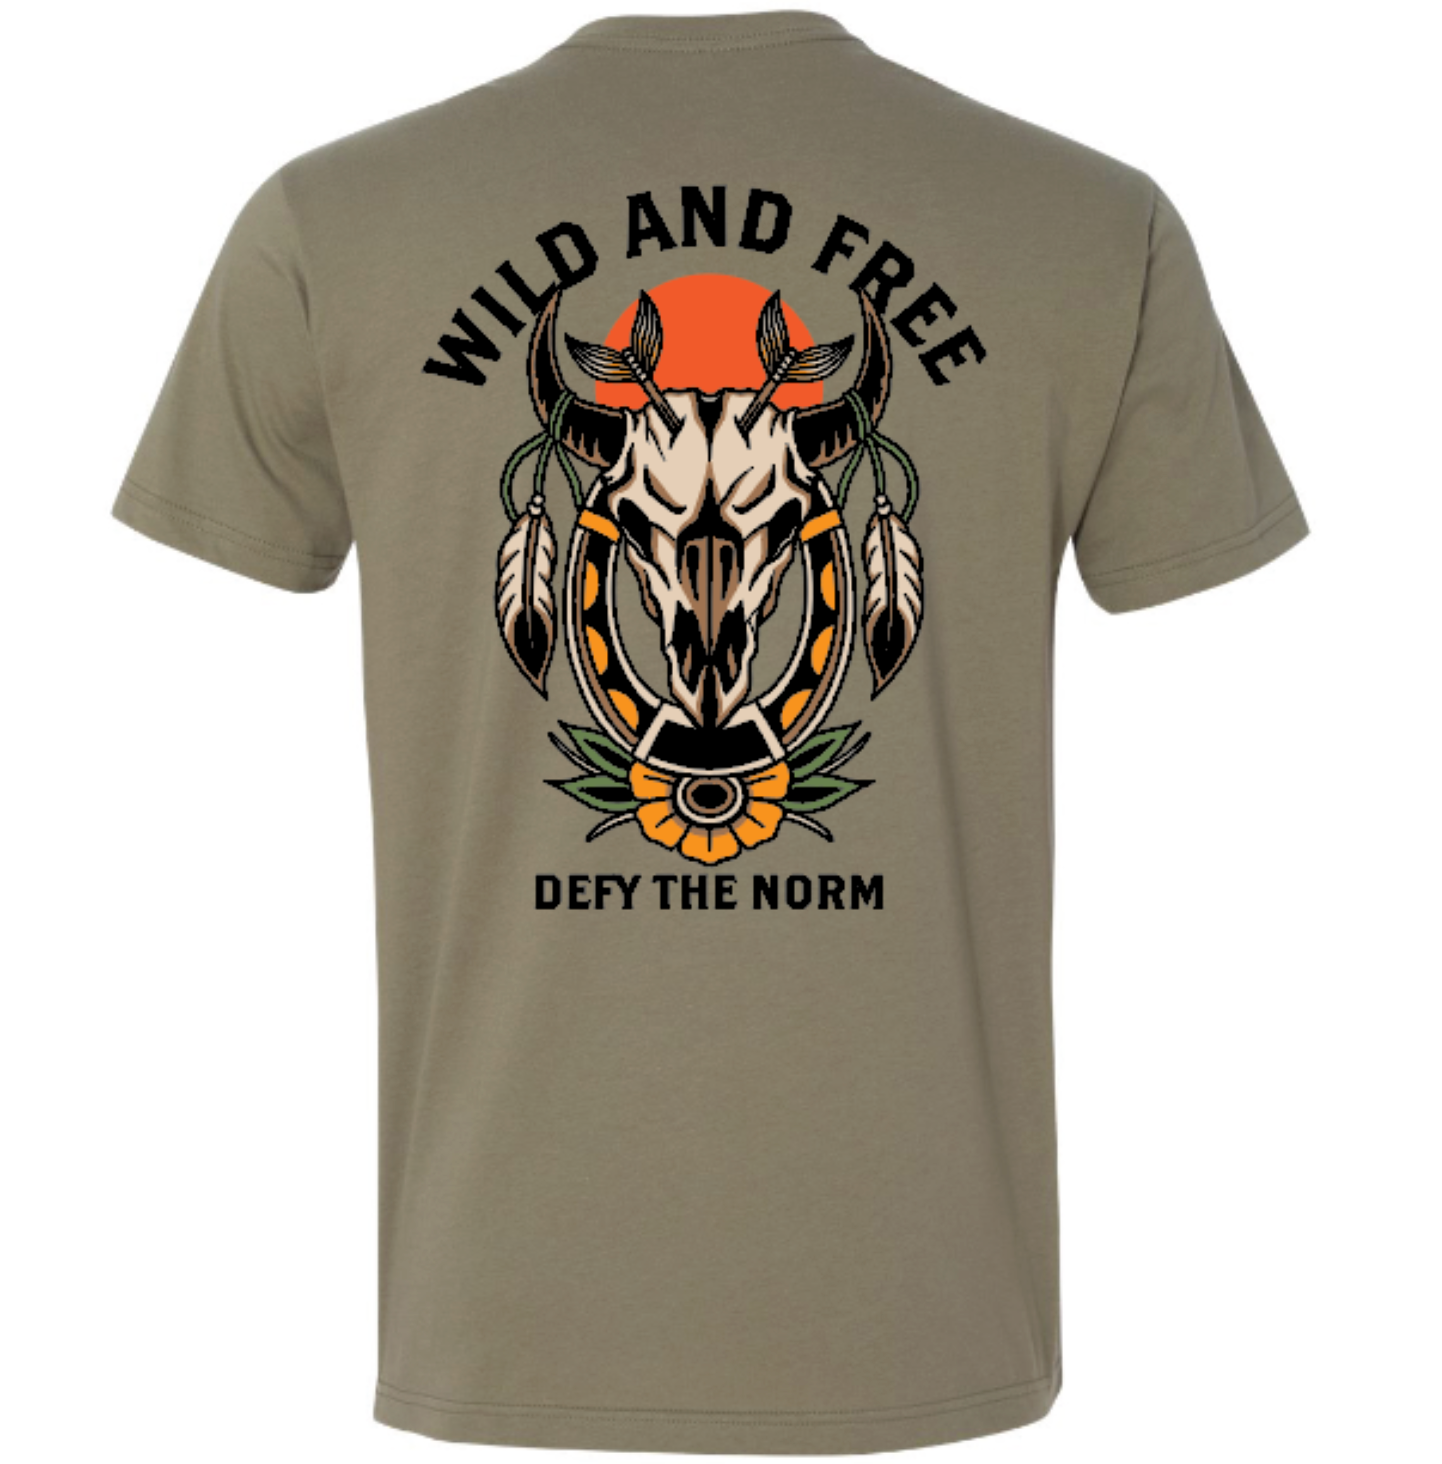 Wild & Free T-Shirt